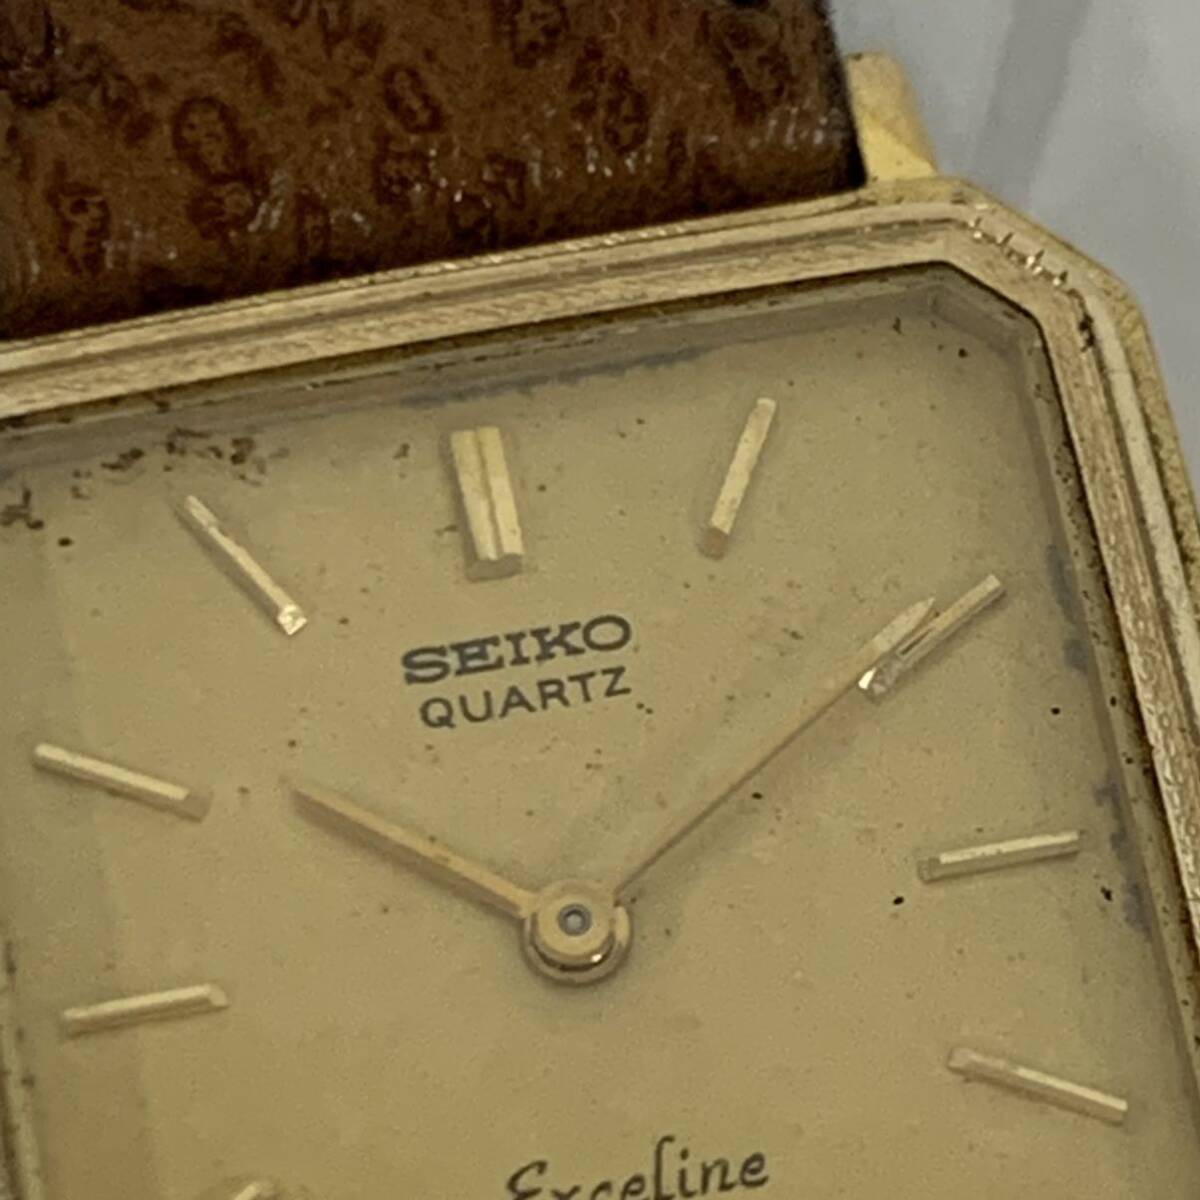  работоспособность не проверялась Seiko SEIKO Exceline EXCELINE кварц 2 стрелки 8420-5410 наручные часы текущее состояние товар ka4